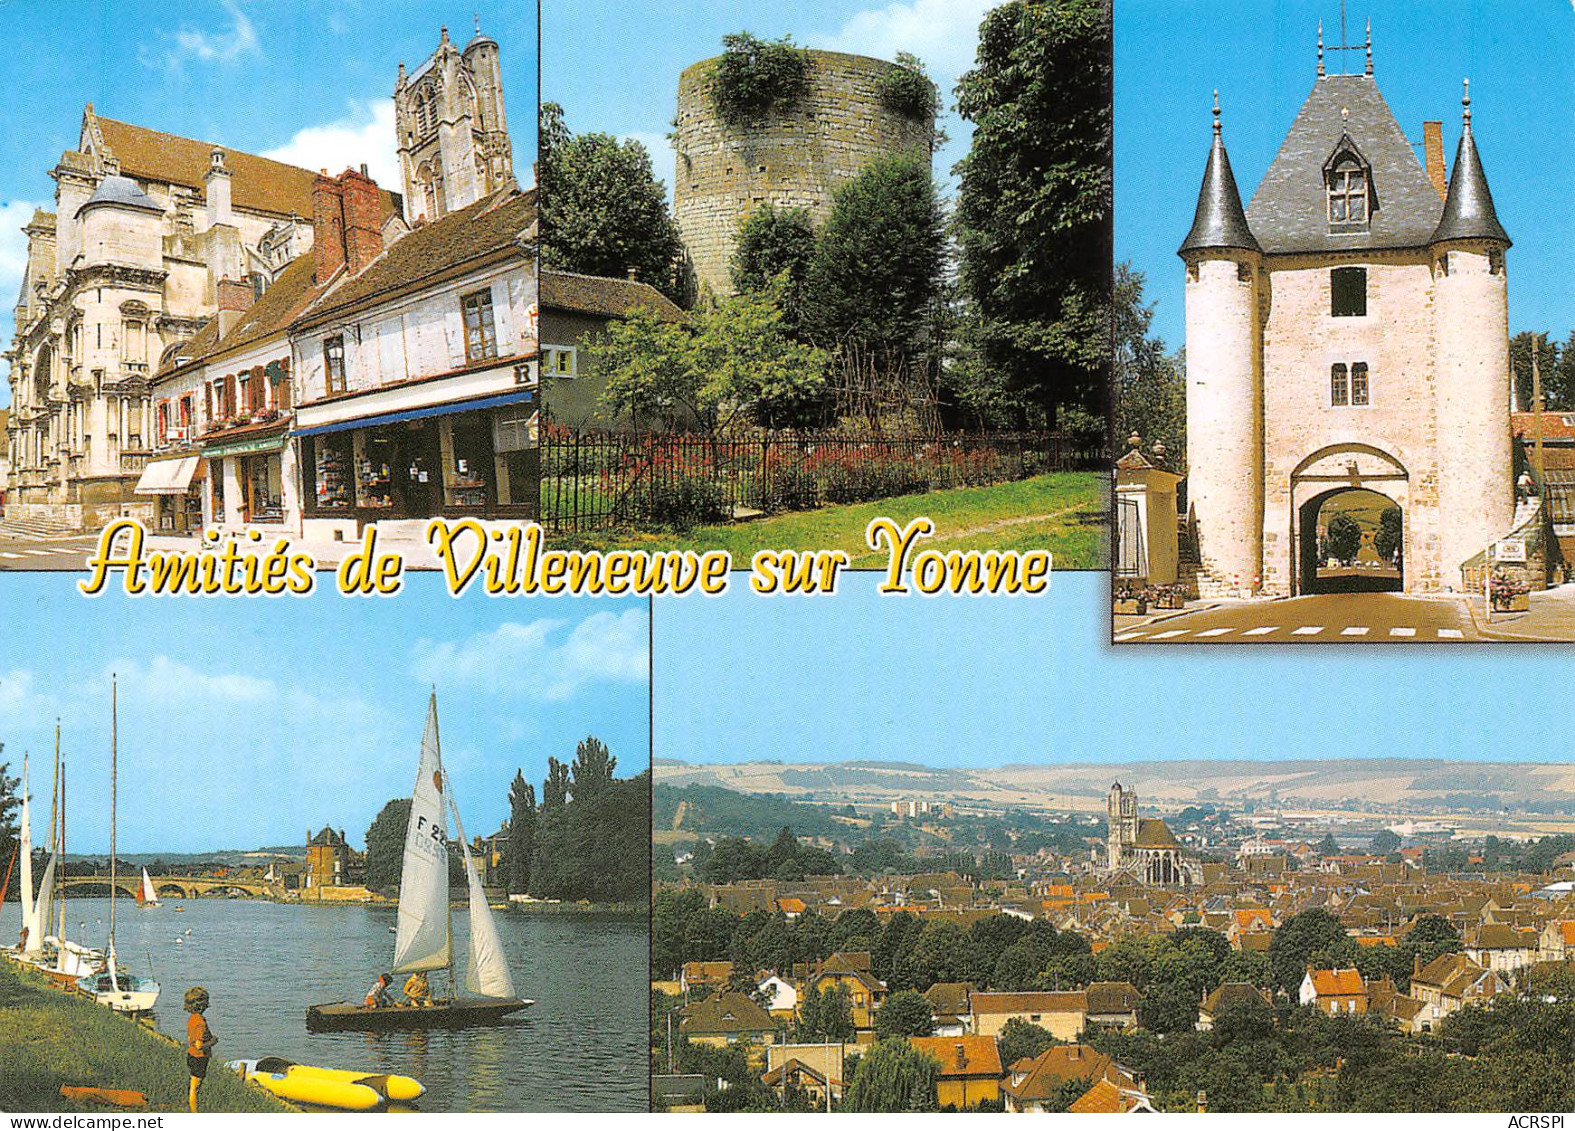 VILLENEUVE SUR YONNE   Cinq Vues  40  (scan Recto Verso)MG2868 - Villeneuve-sur-Yonne